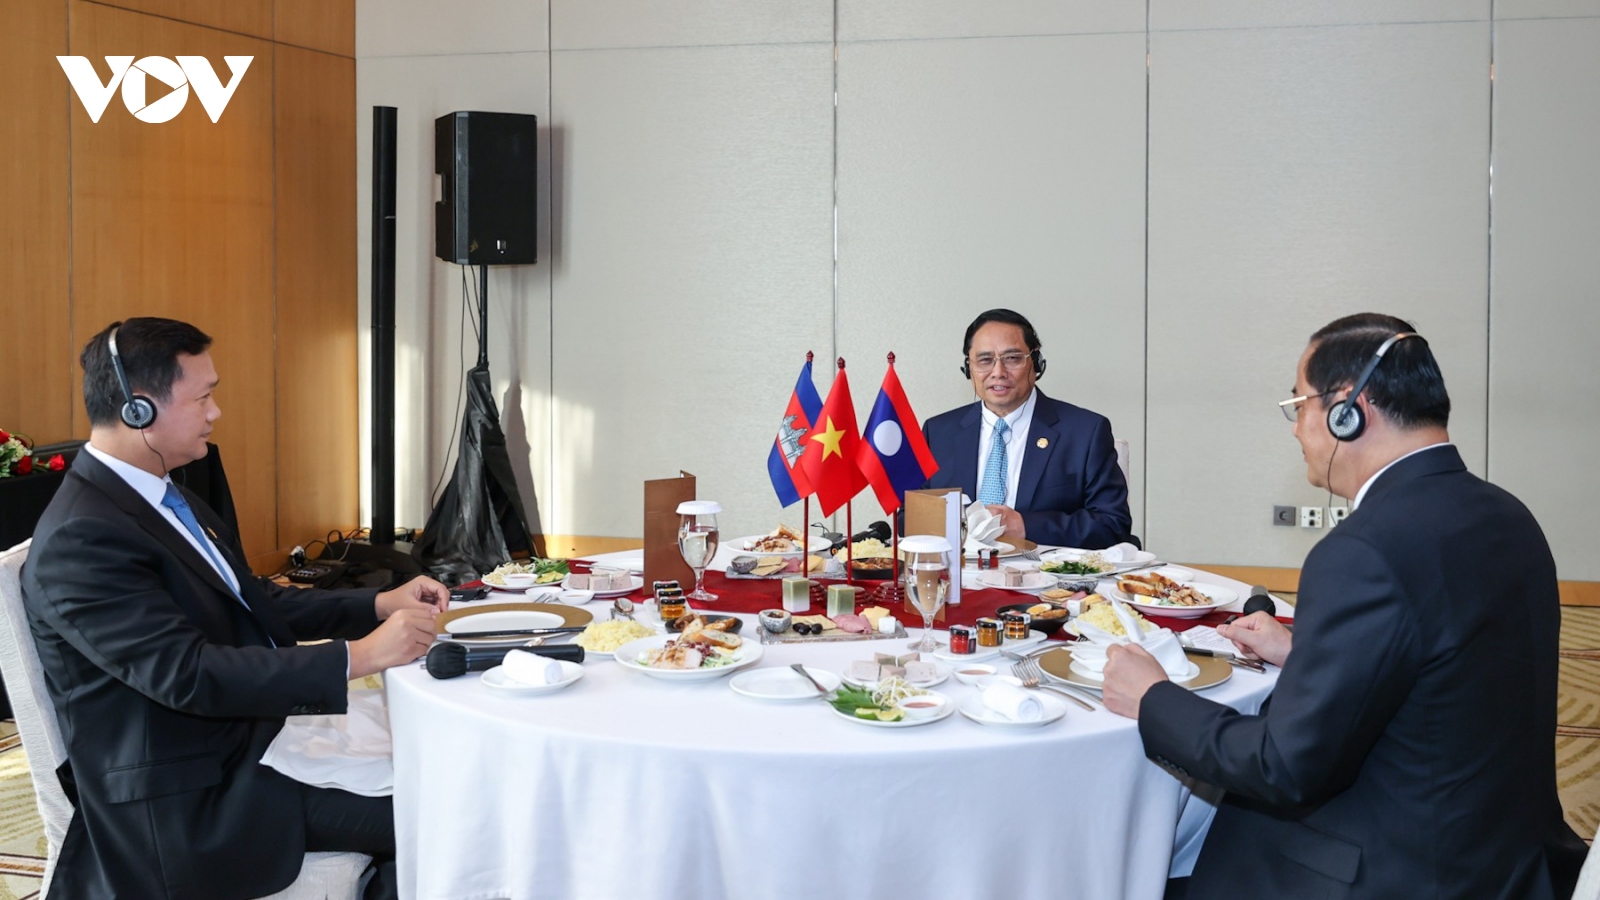 Thủ tướng Phạm Minh Chính ăn sáng, làm việc với Thủ tướng Lào và Campuchia